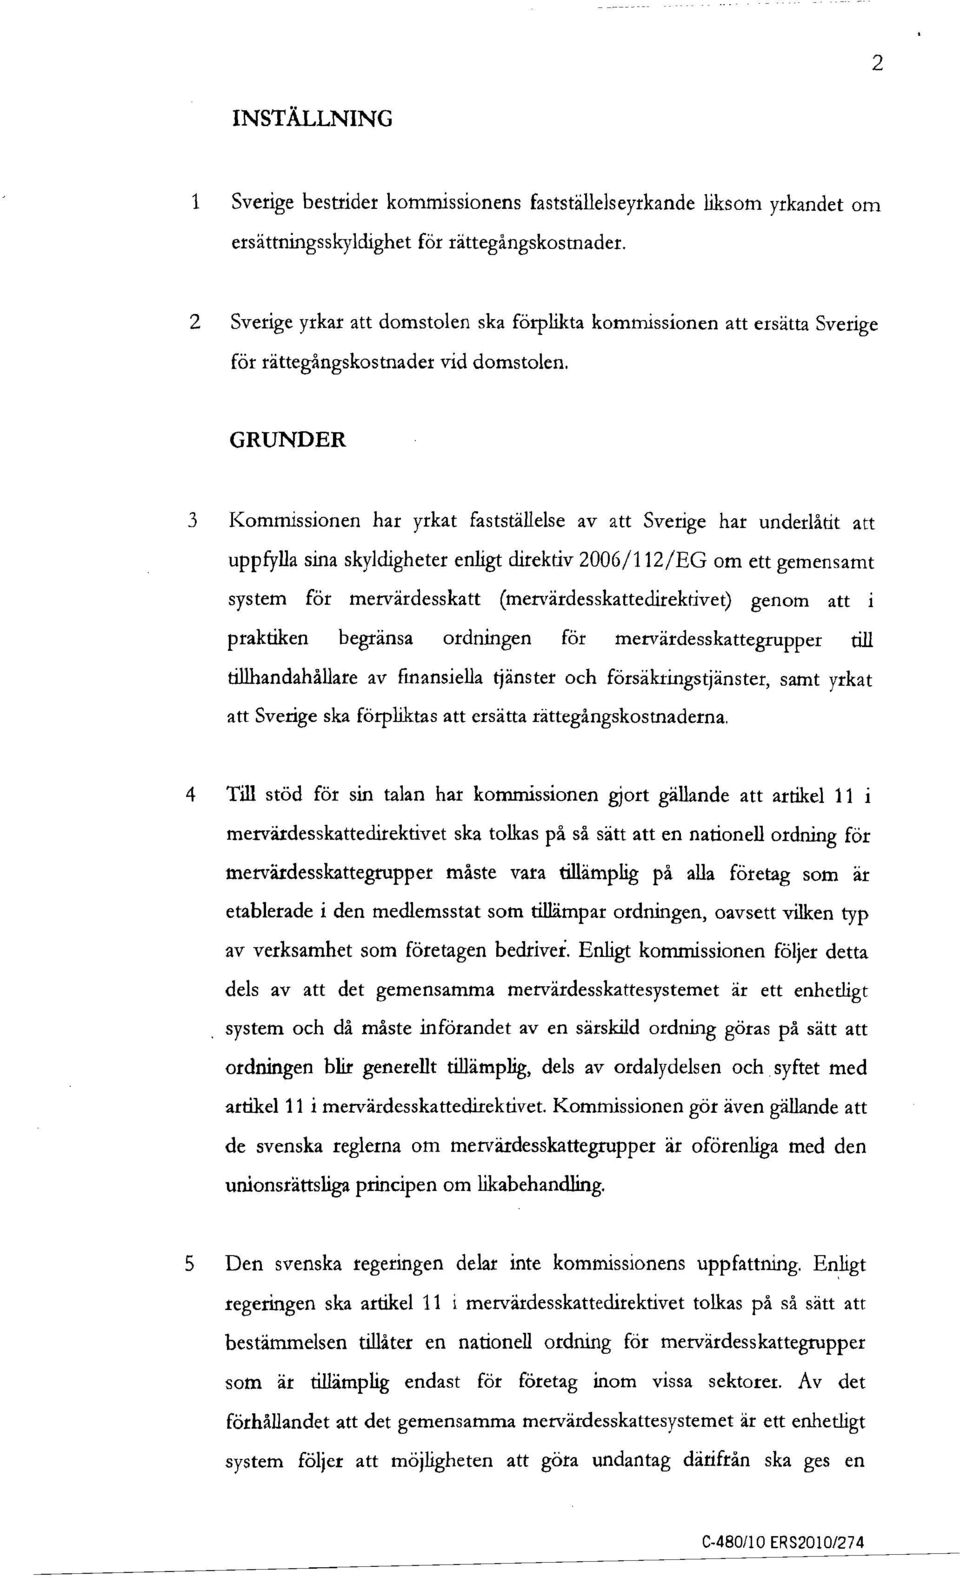 GRUNDER 3 Kommissionen har yrkat fastställelse av att Sverige har underlåtit att uppfylla sina skyldigheter enligt direktiv 2006/112/EG om ett gemensamt system för mervärdesskatt